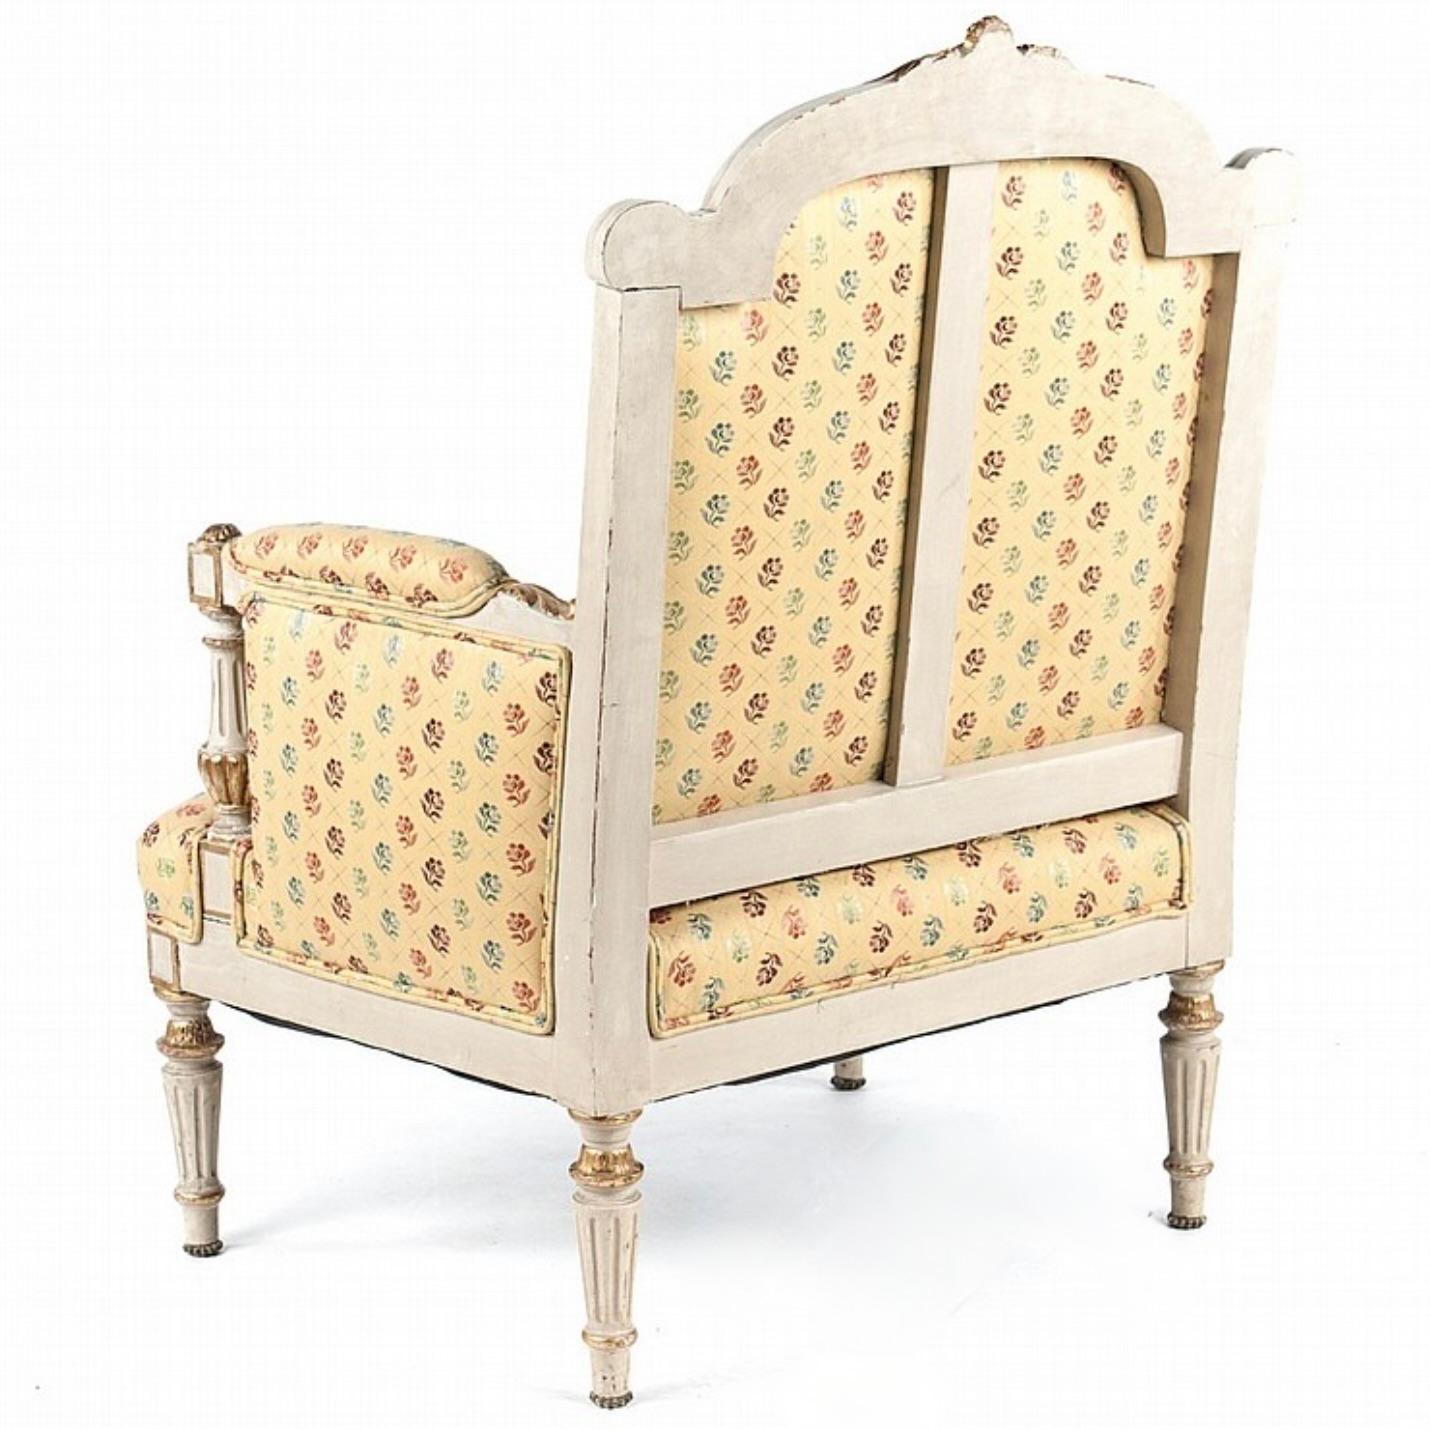 Ein charmanter cremefarbener und vergoldeter Sessel von ca. 1850 mit großzügigen Proportionen, auf konisch zulaufenden, kannelierten Beinen und mit aufrechten, kannelierten Balusterarmlehnen in der Louis XVI-Manier. Die Rückenlehne ist gewölbt und